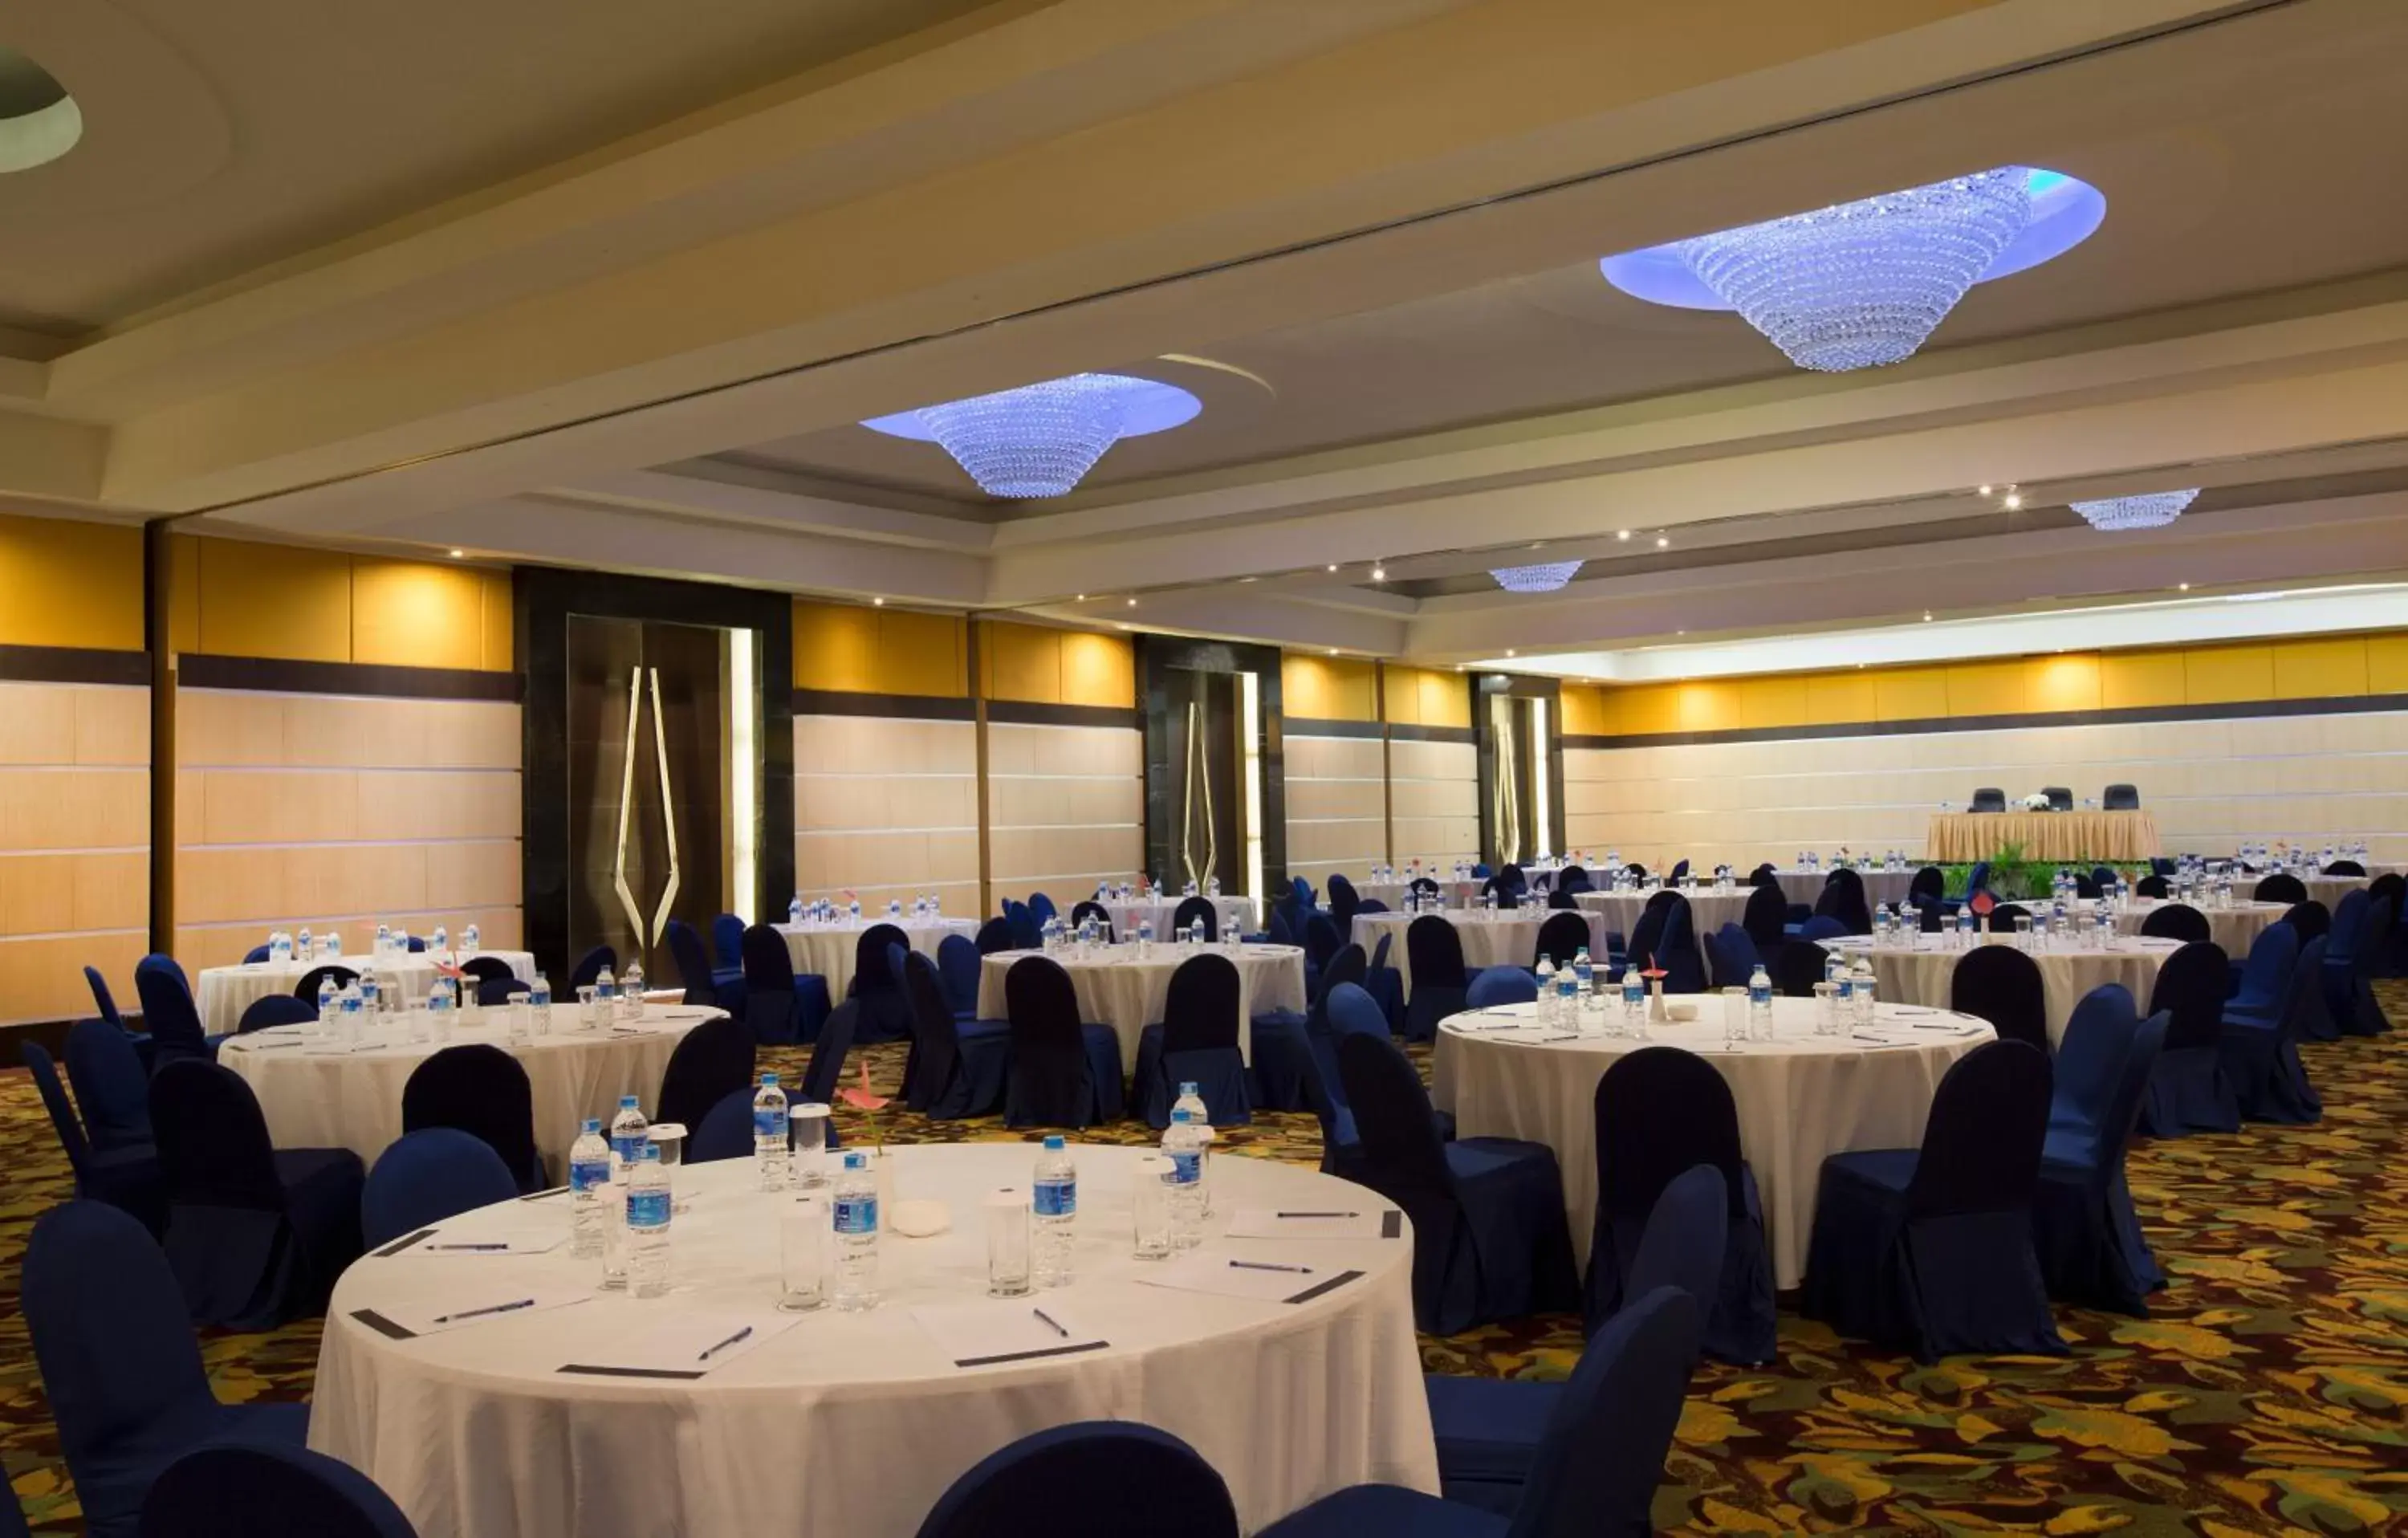 Banquet/Function facilities, Banquet Facilities in Novotel Manado Golf Resort & Convention Center